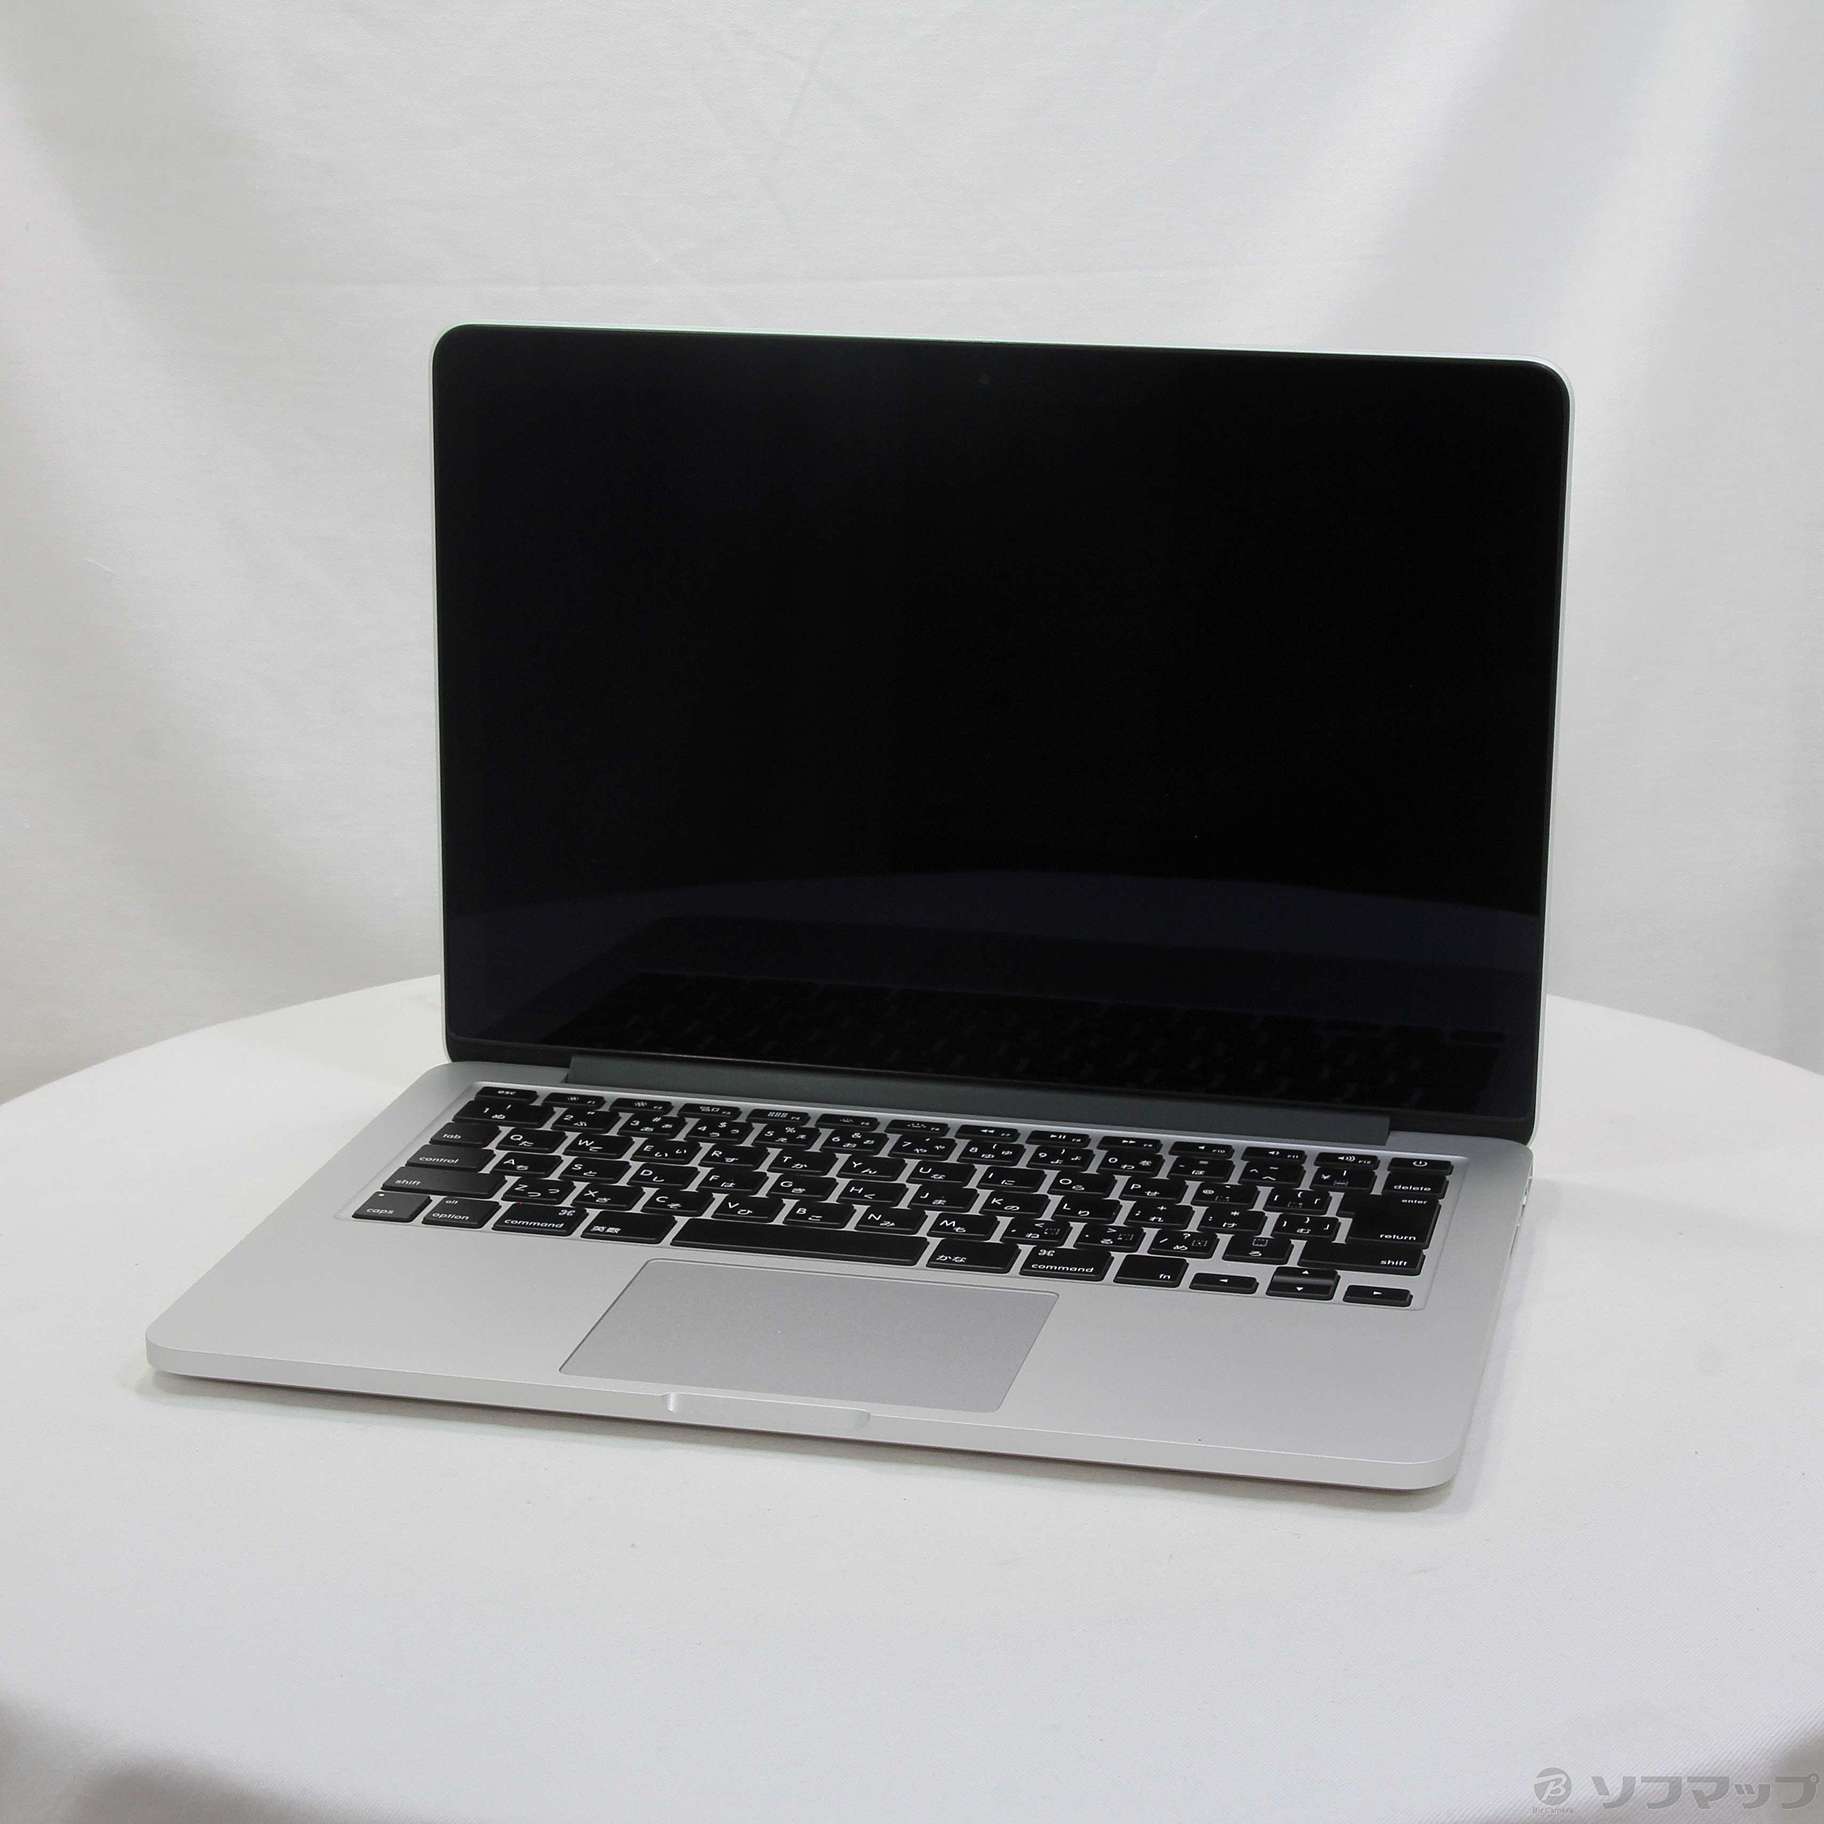 【使用回数:3】 APPLE MacBook Pro 2014 MGX82J/A